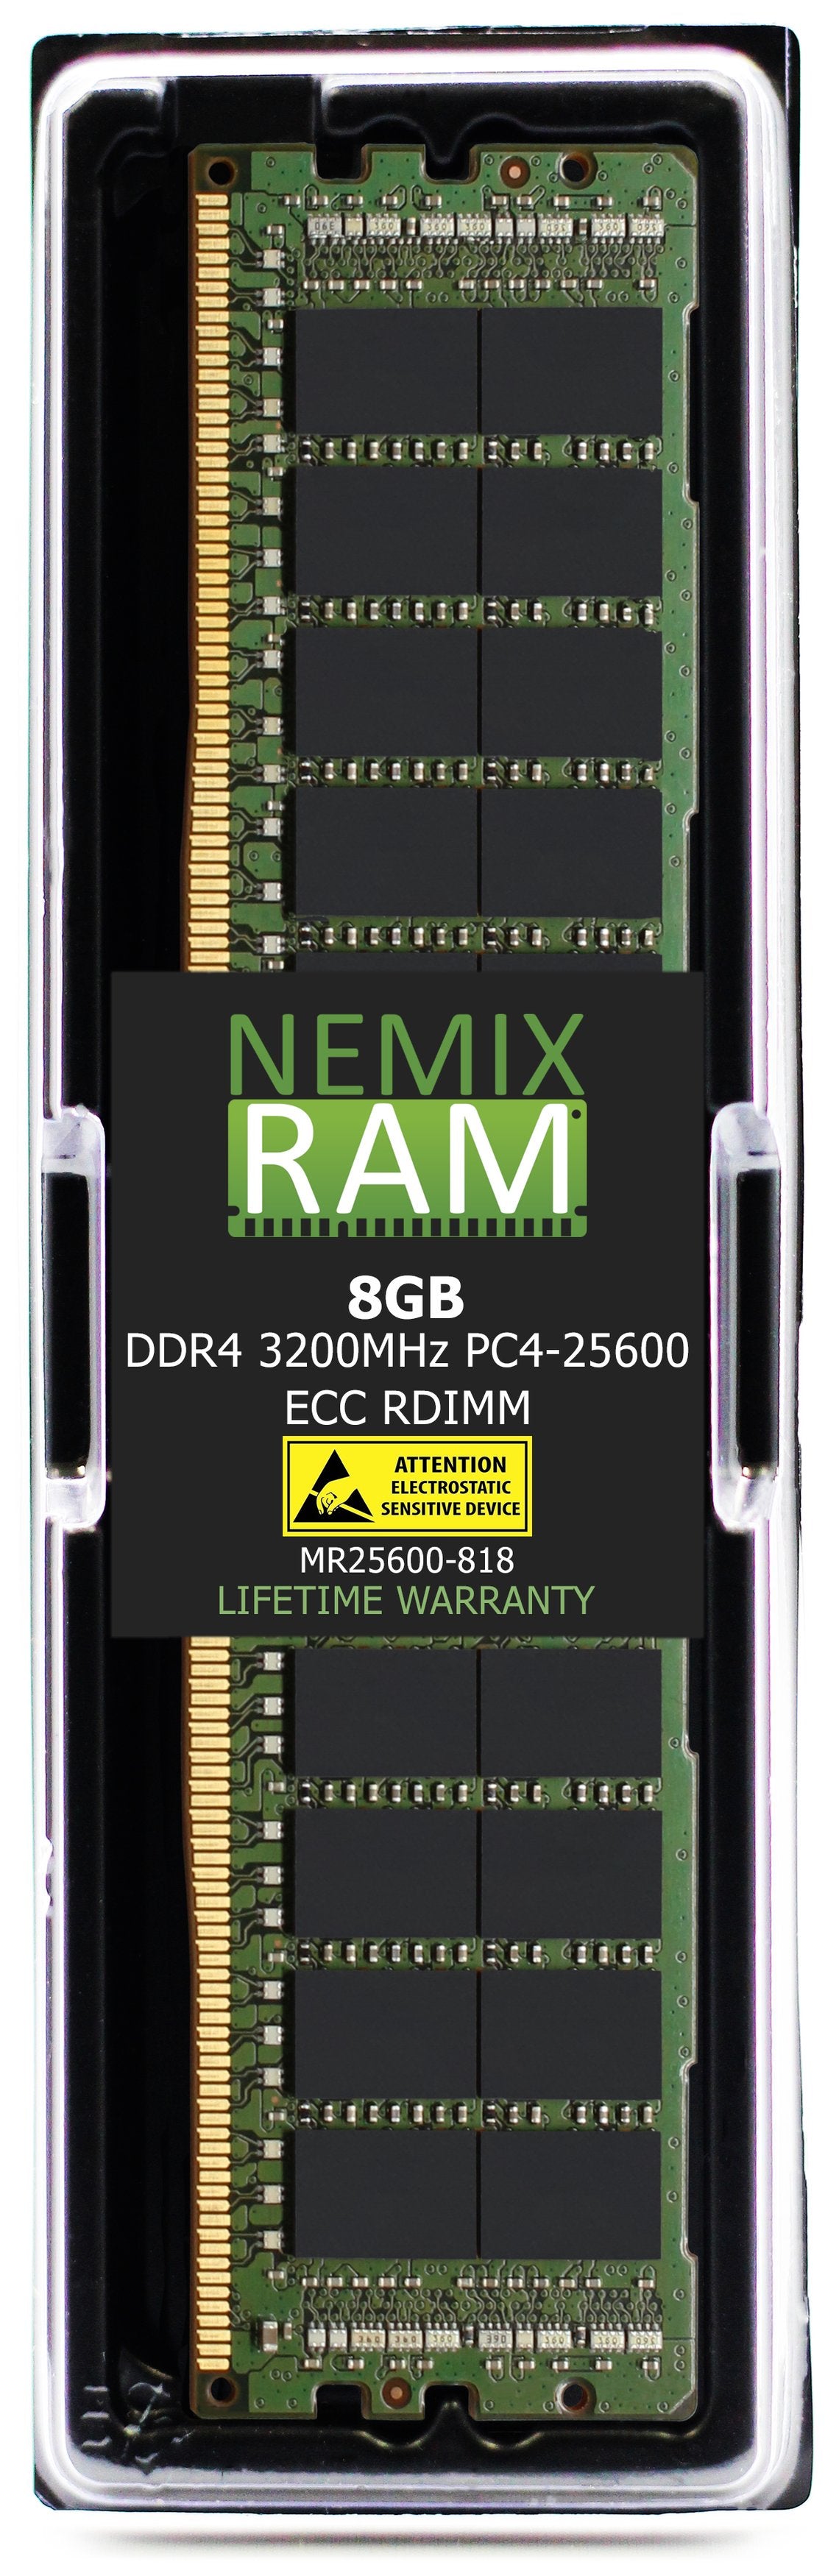 8GB DDR4 3200MHZ PC4-25600 RDIMM Compatible with Supermicro MEM-DR480L-CL03-ER32